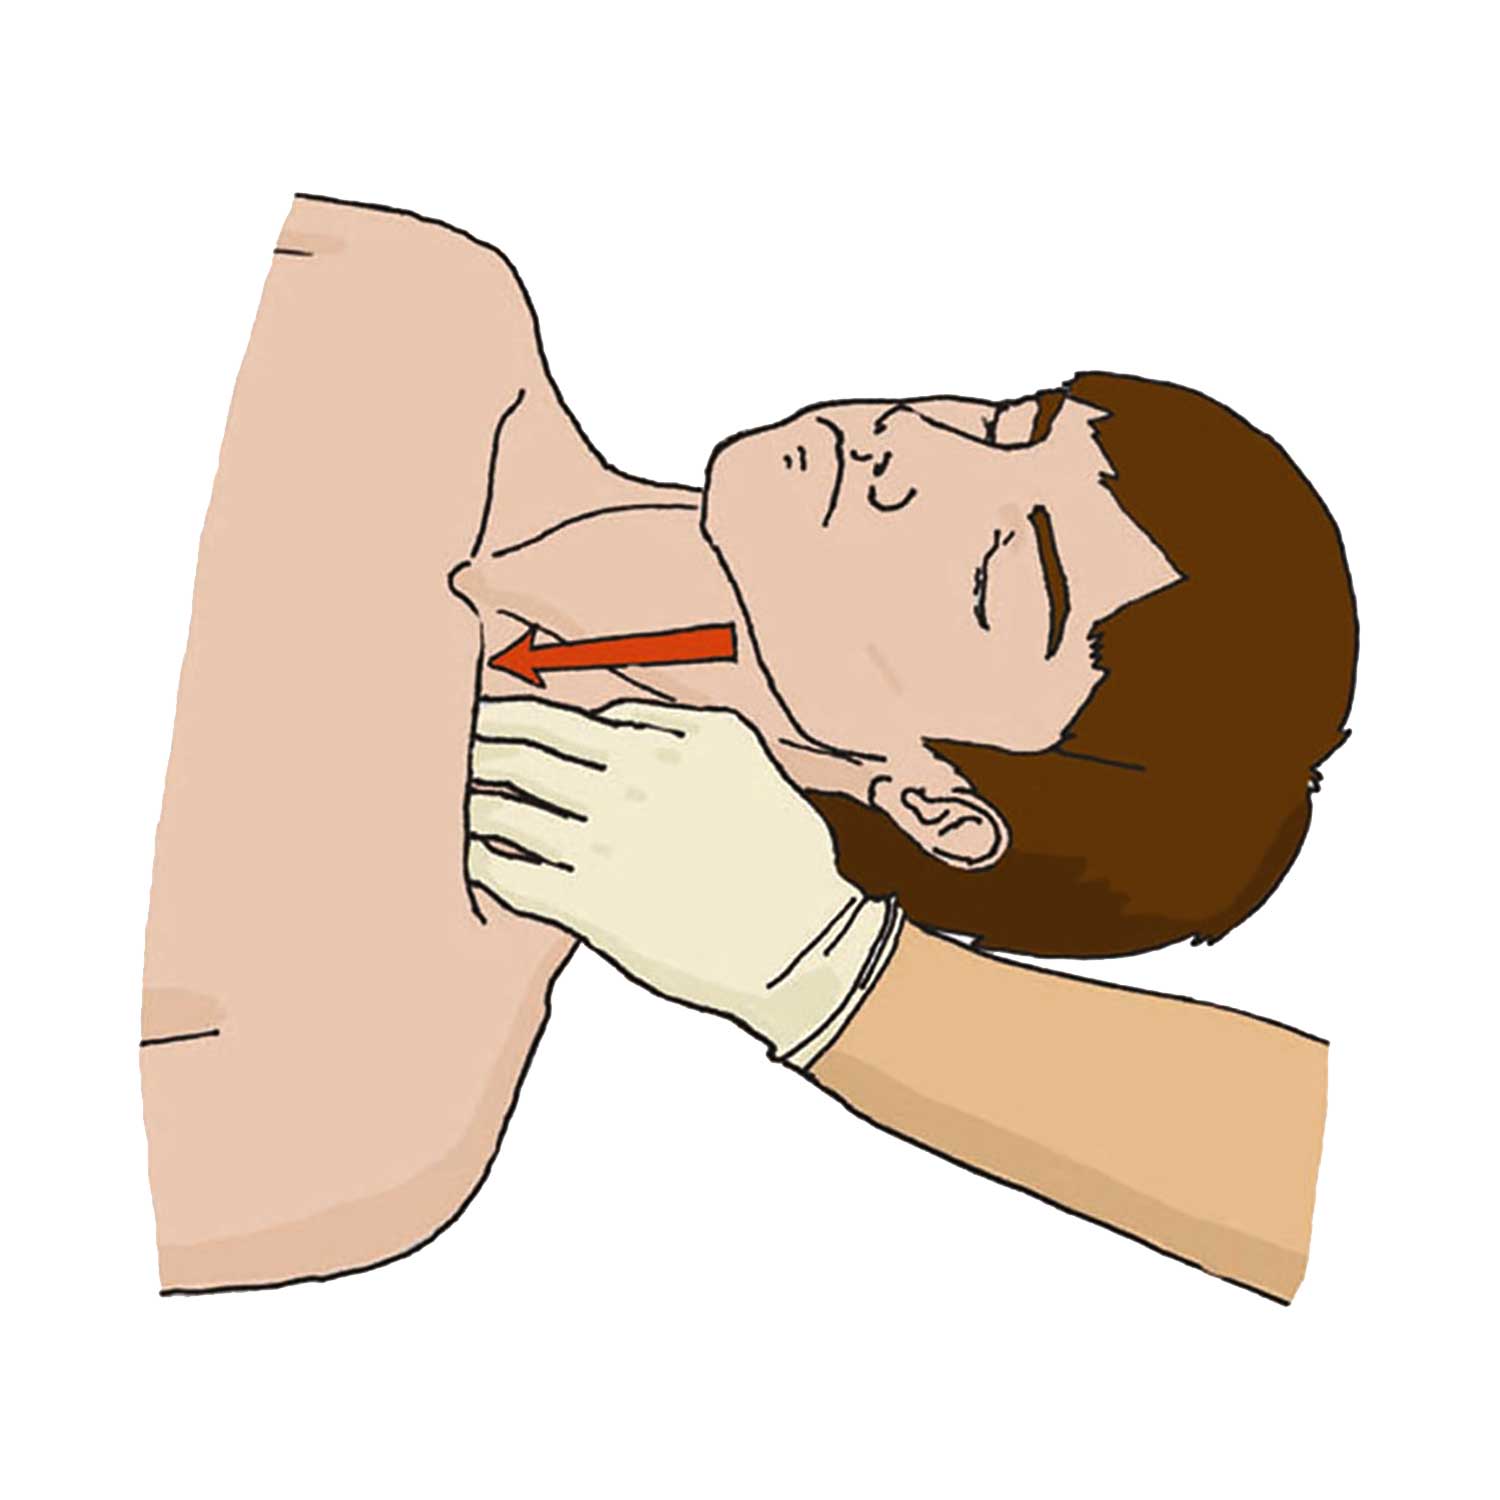 Вариант 1. Прижатие подключичной артерии выпрямленными пальцами